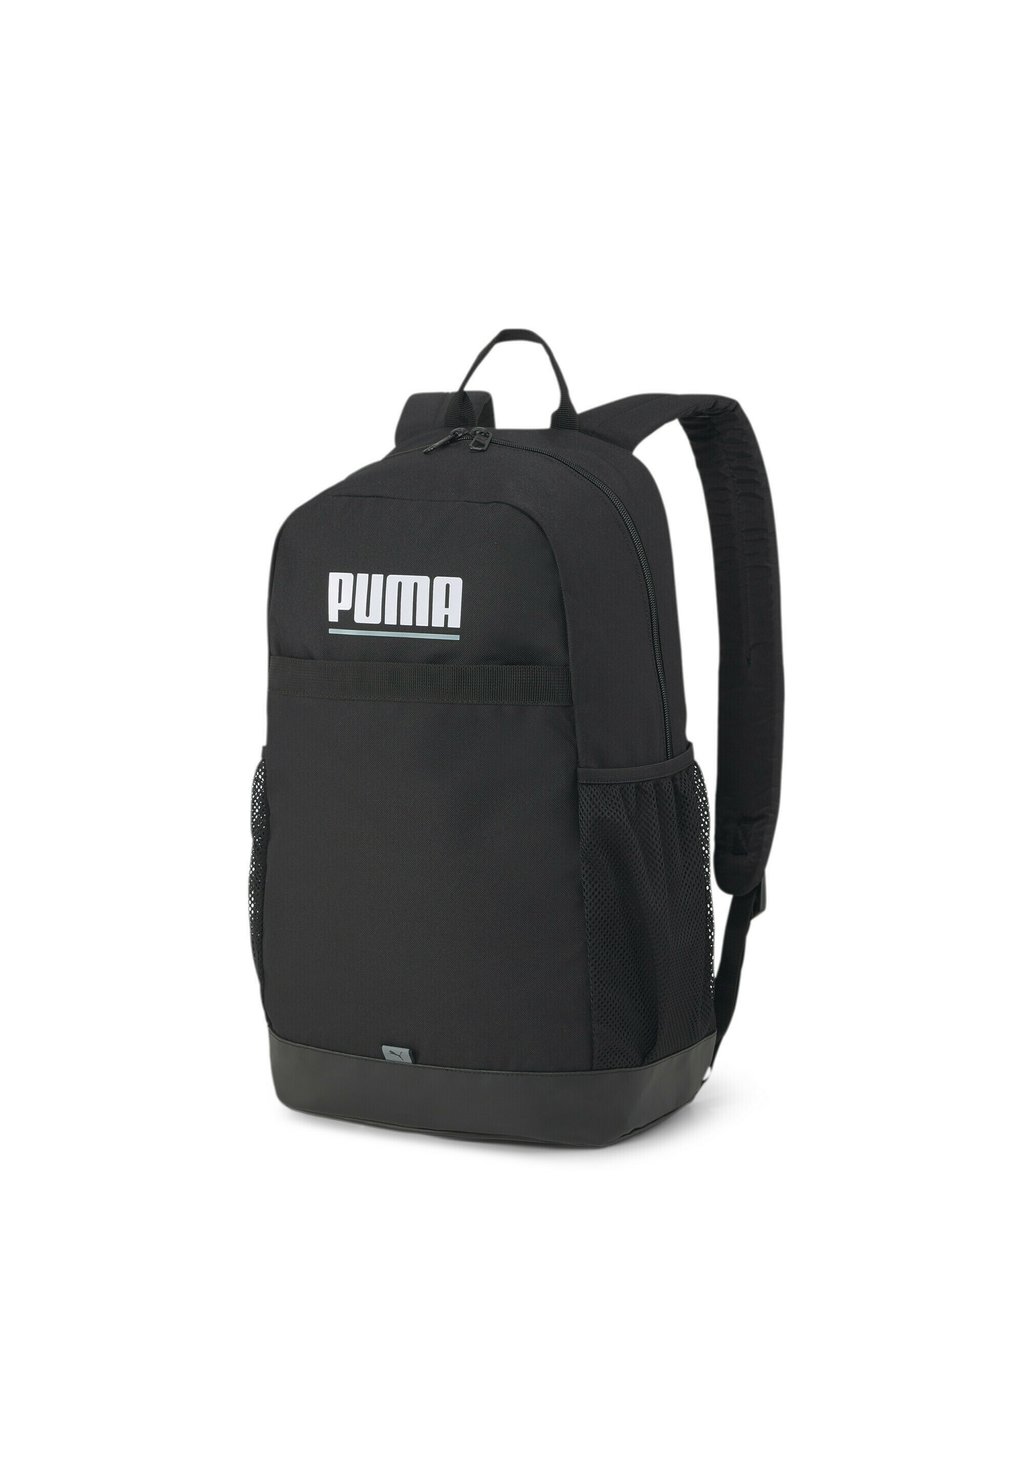 Рюкзак для путешествий Puma Plus, чёрный